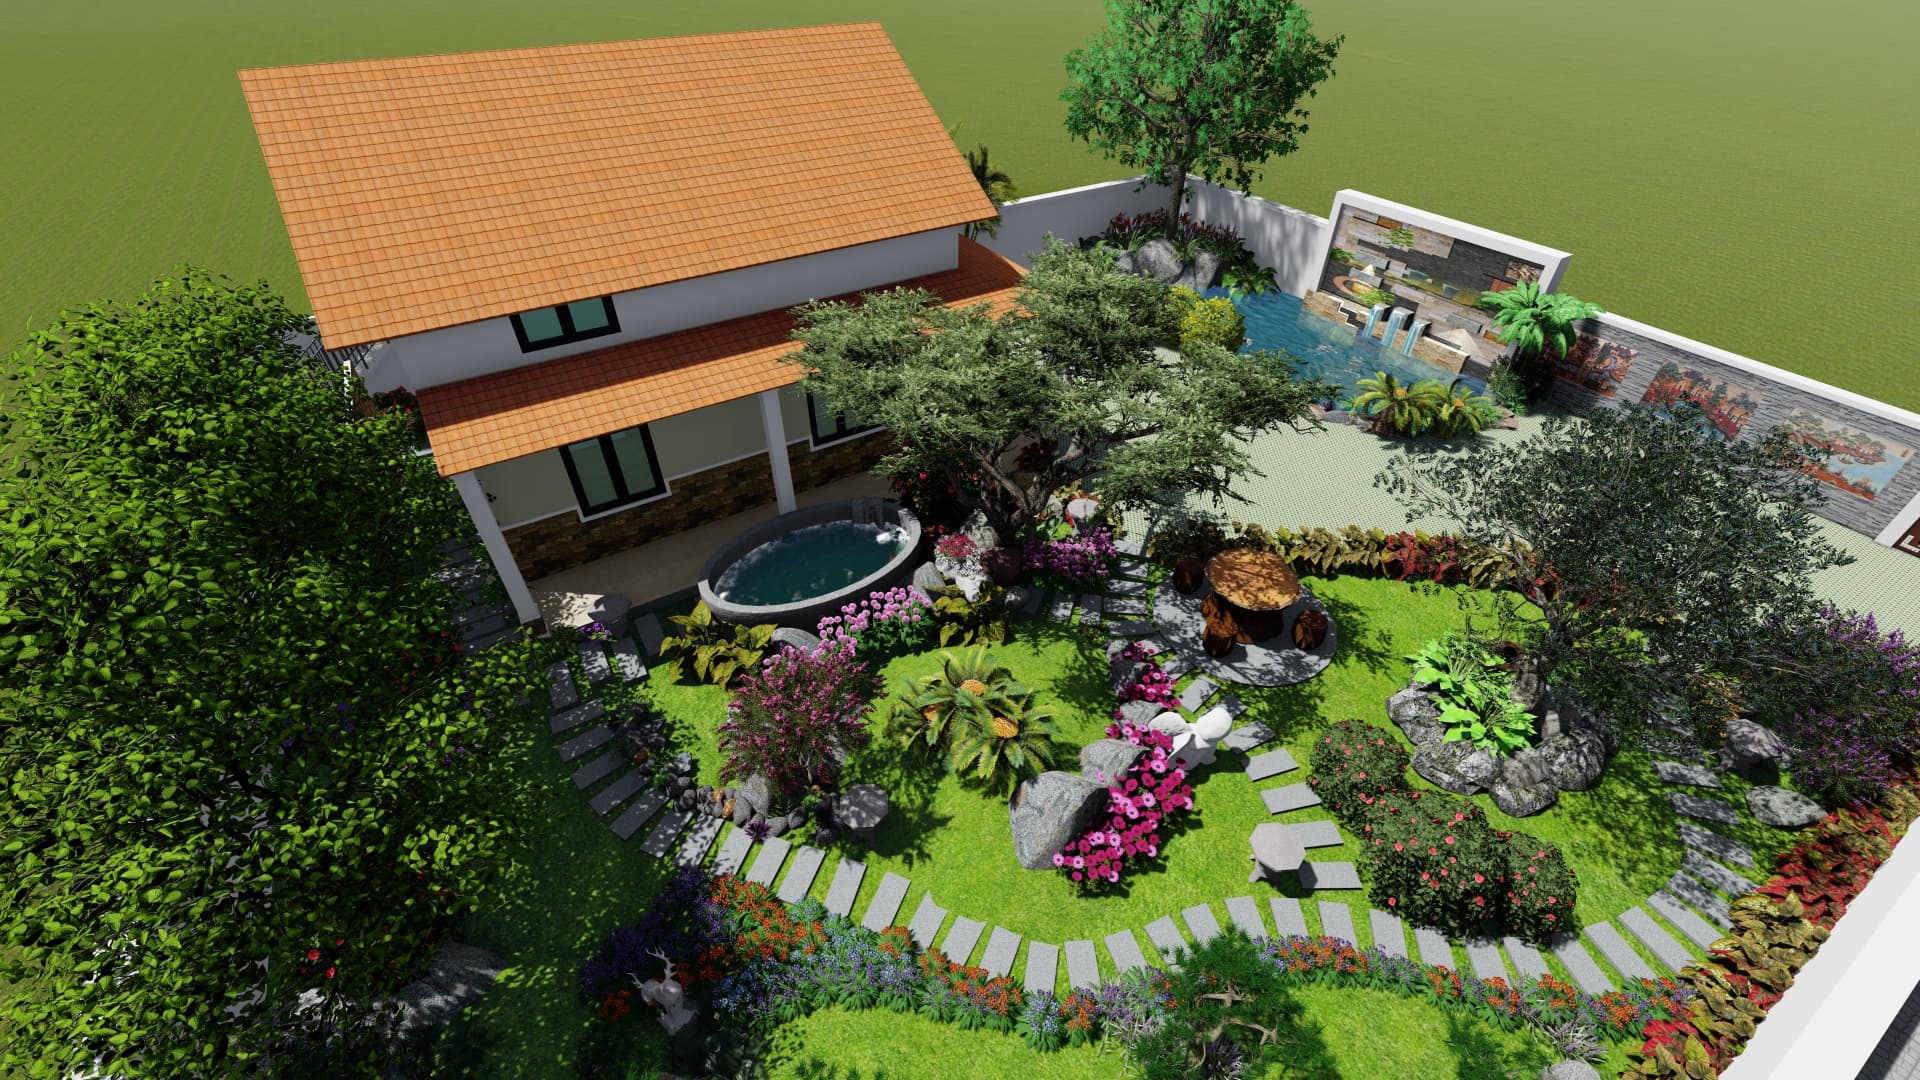 Thiết kế nhà cấp 4 sân vườn giúp các thành viên nhí có không gian vui chơi ngoài trời ngay tại nhà